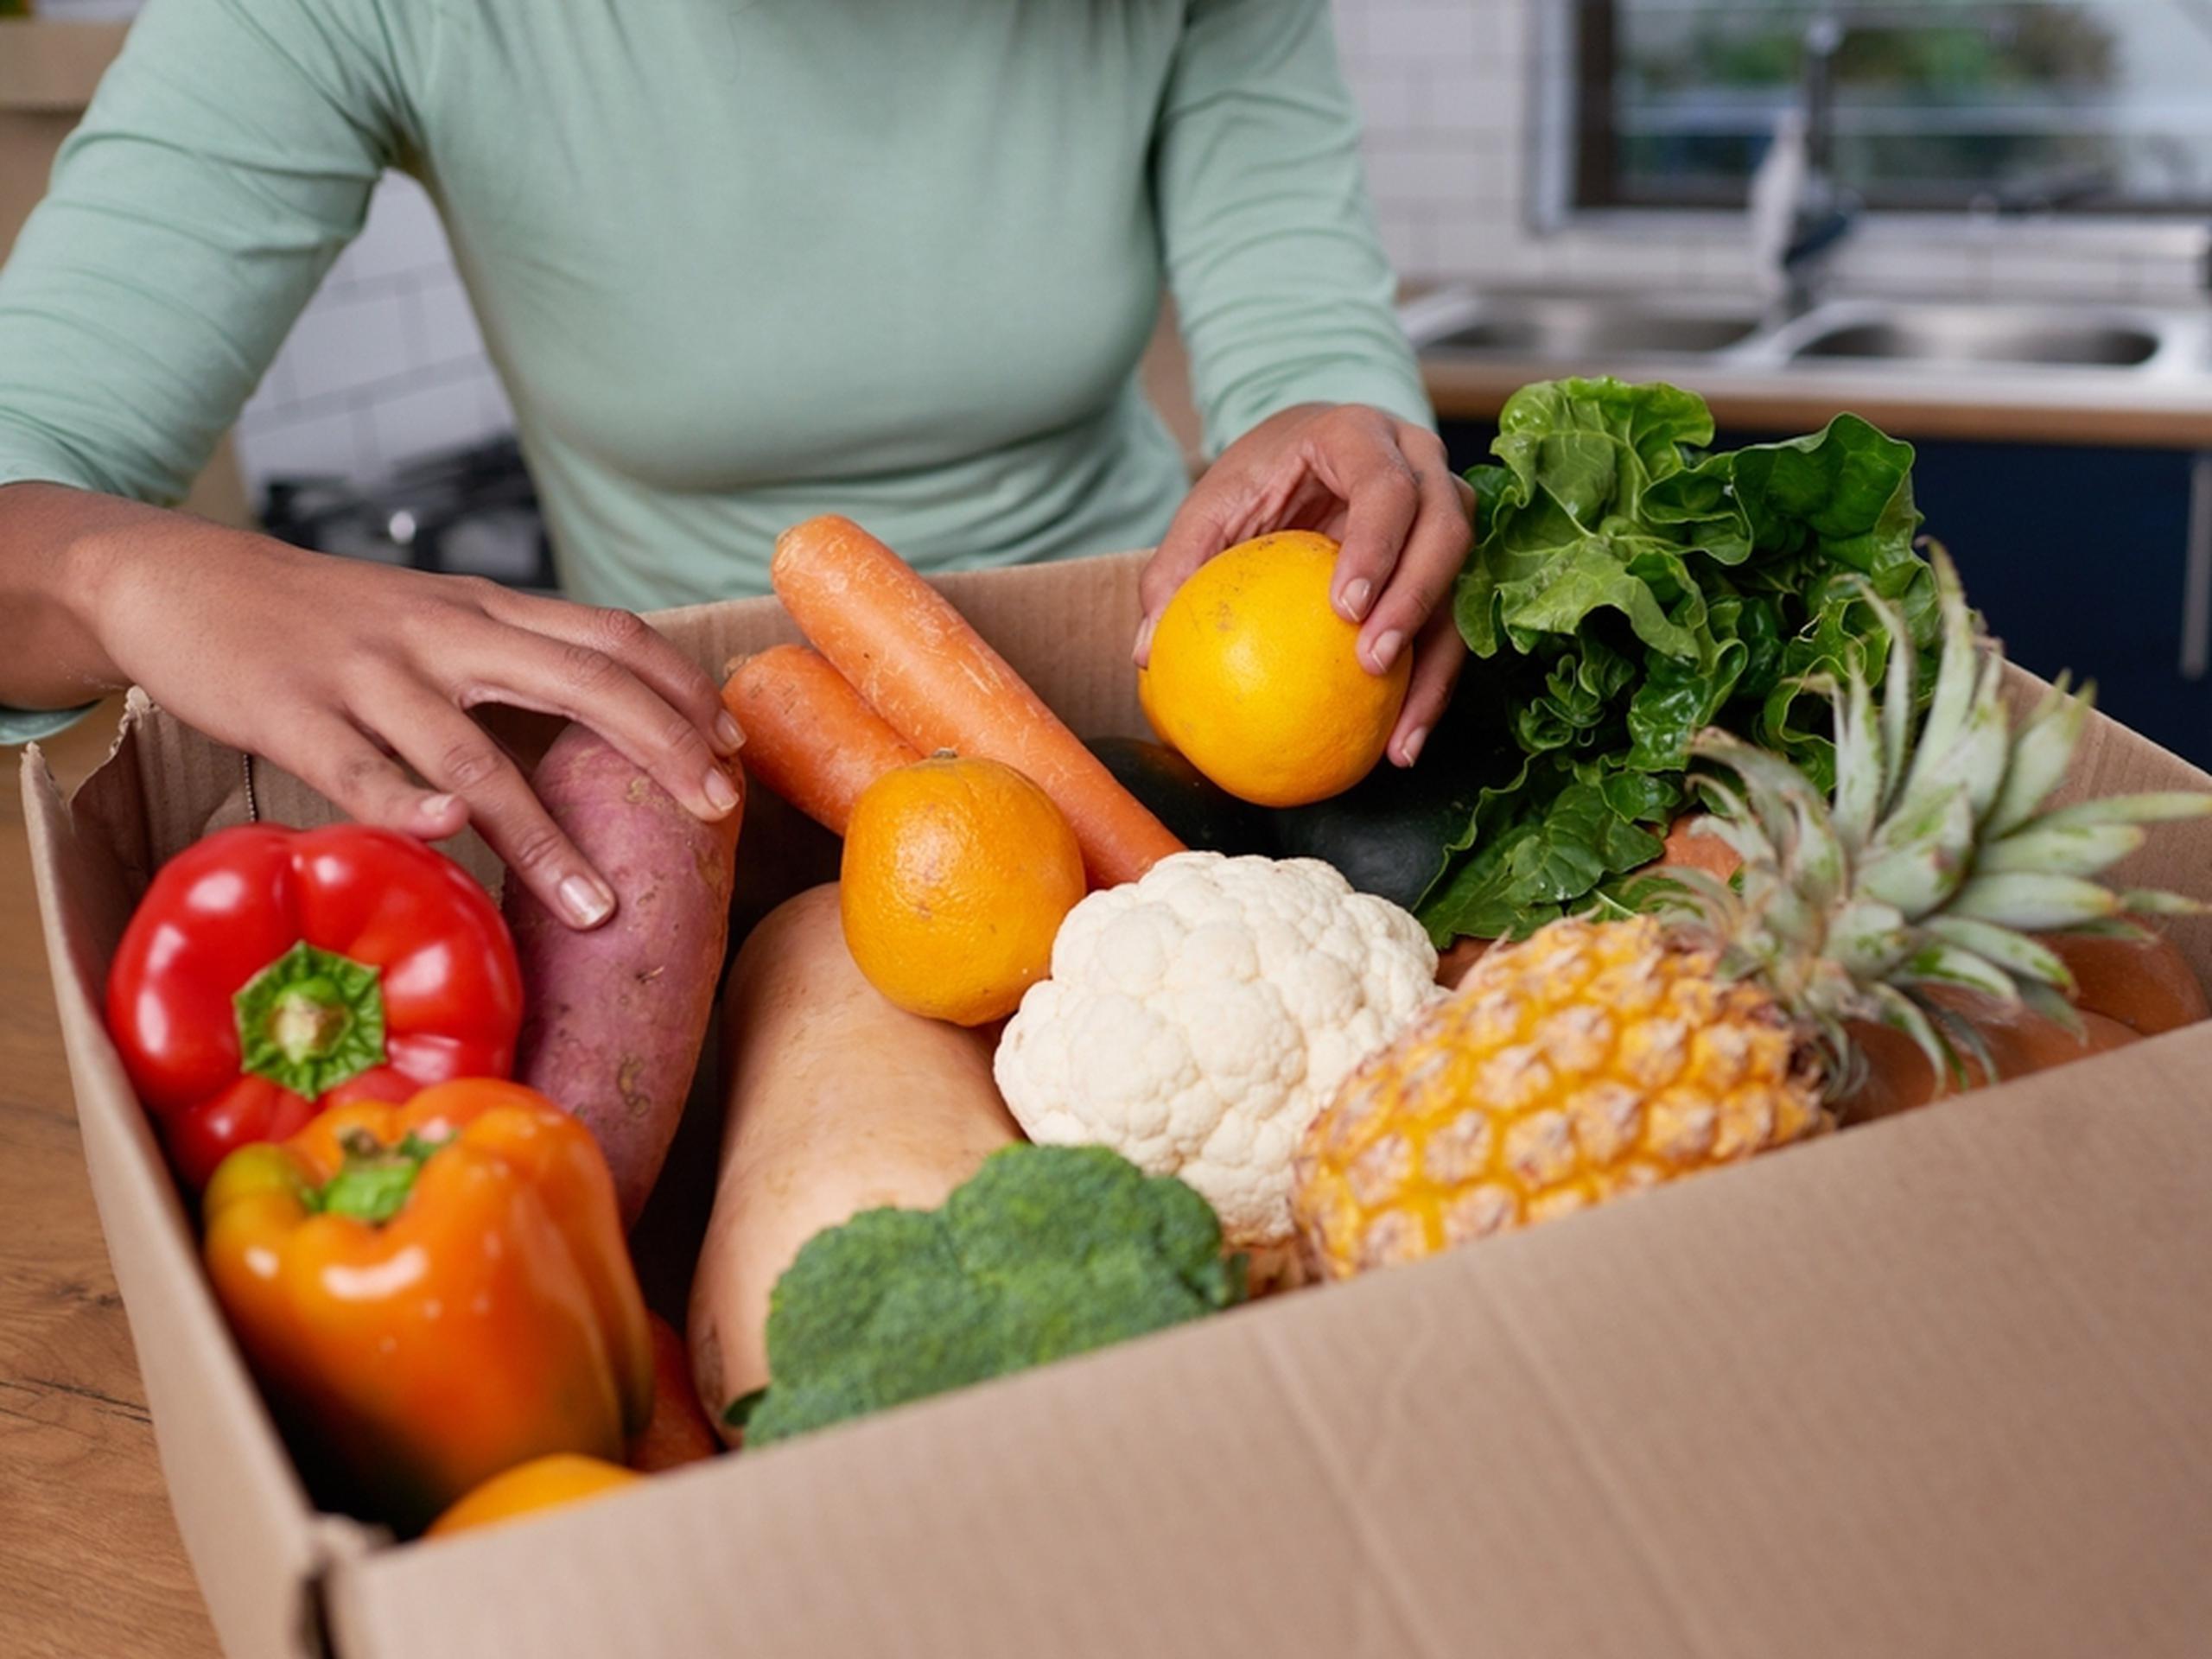 Comprar y consumir productos agrícolas locales provee una mayor nutrición y nos aleja de esos productos procesados.